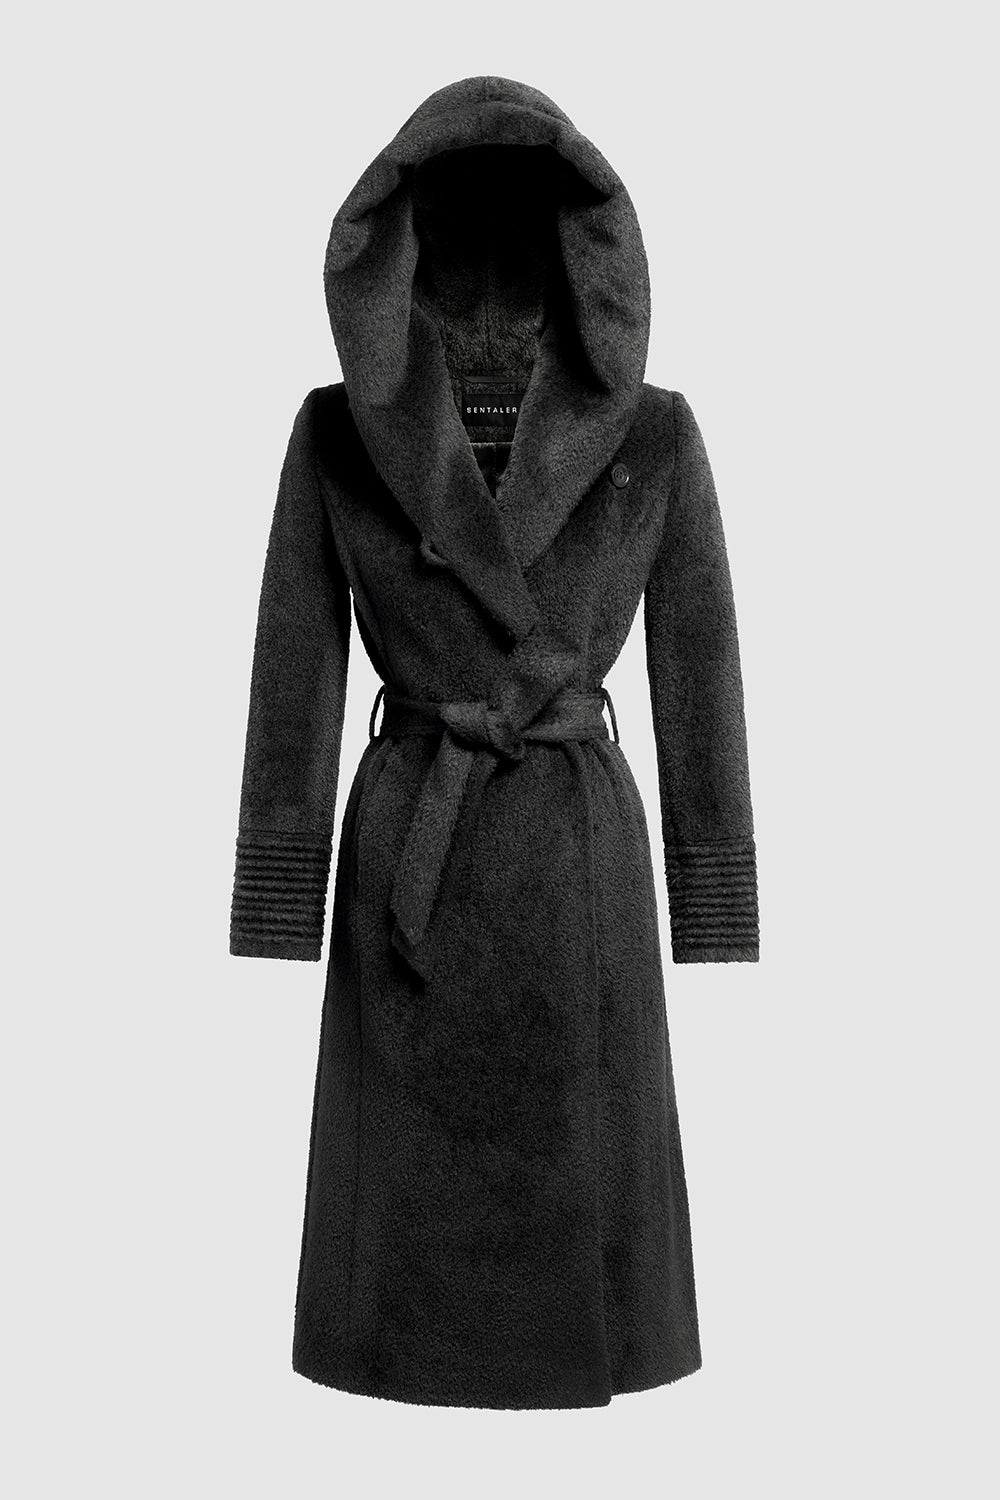 Bouclé Alpaca Long Hooded Wrap Black Coat | SENTALER